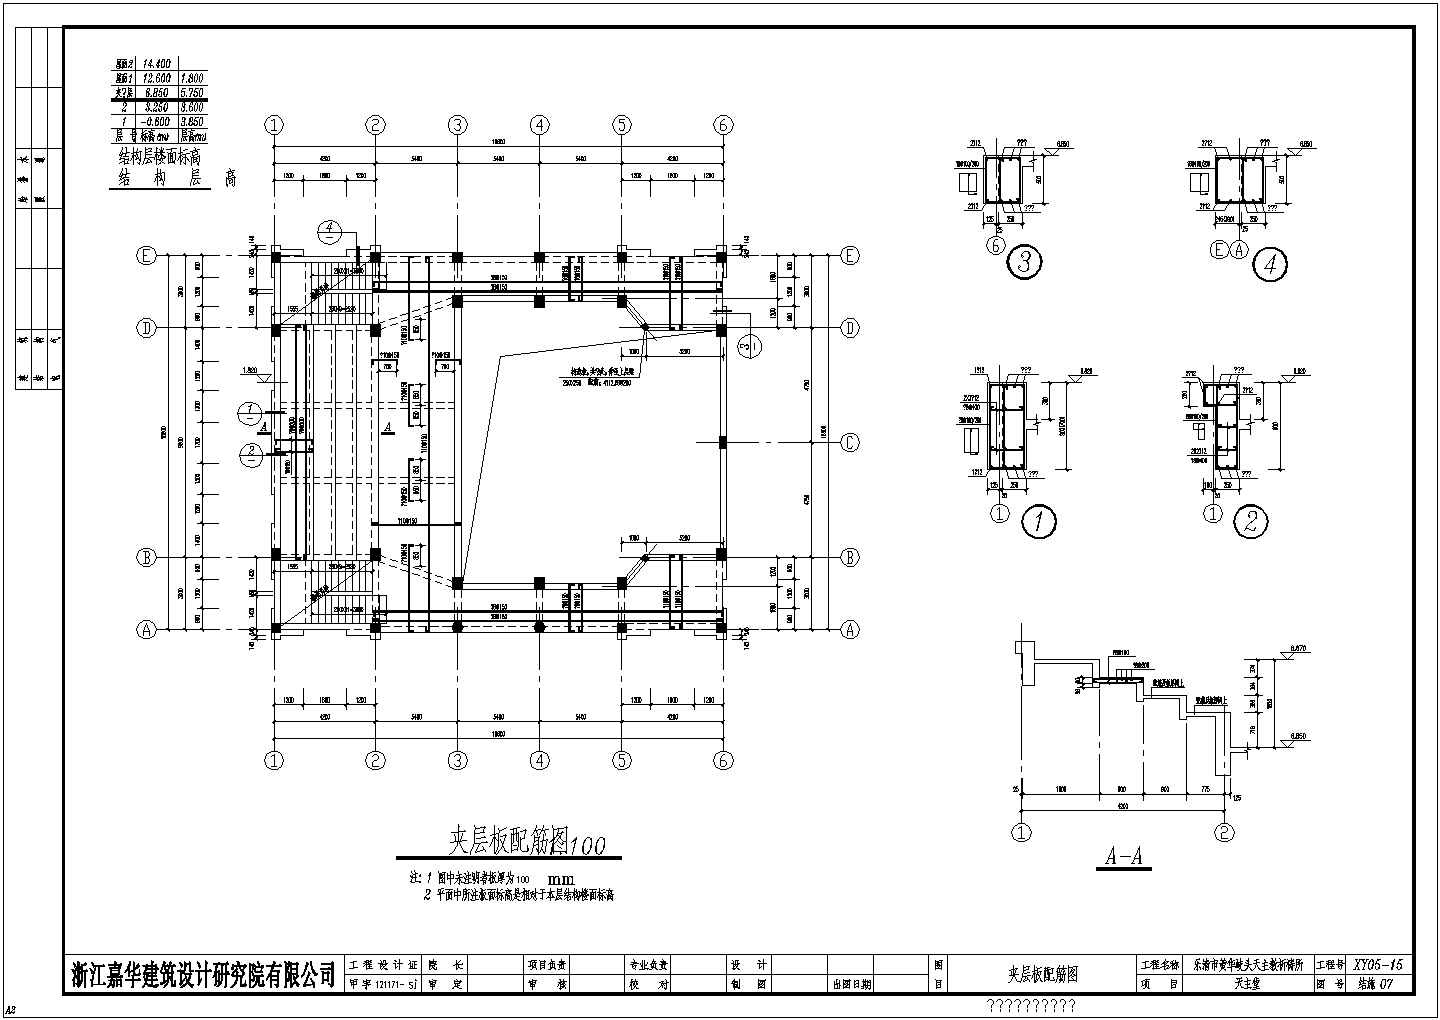 二层板配筋结构天主会堂施工设计图纸